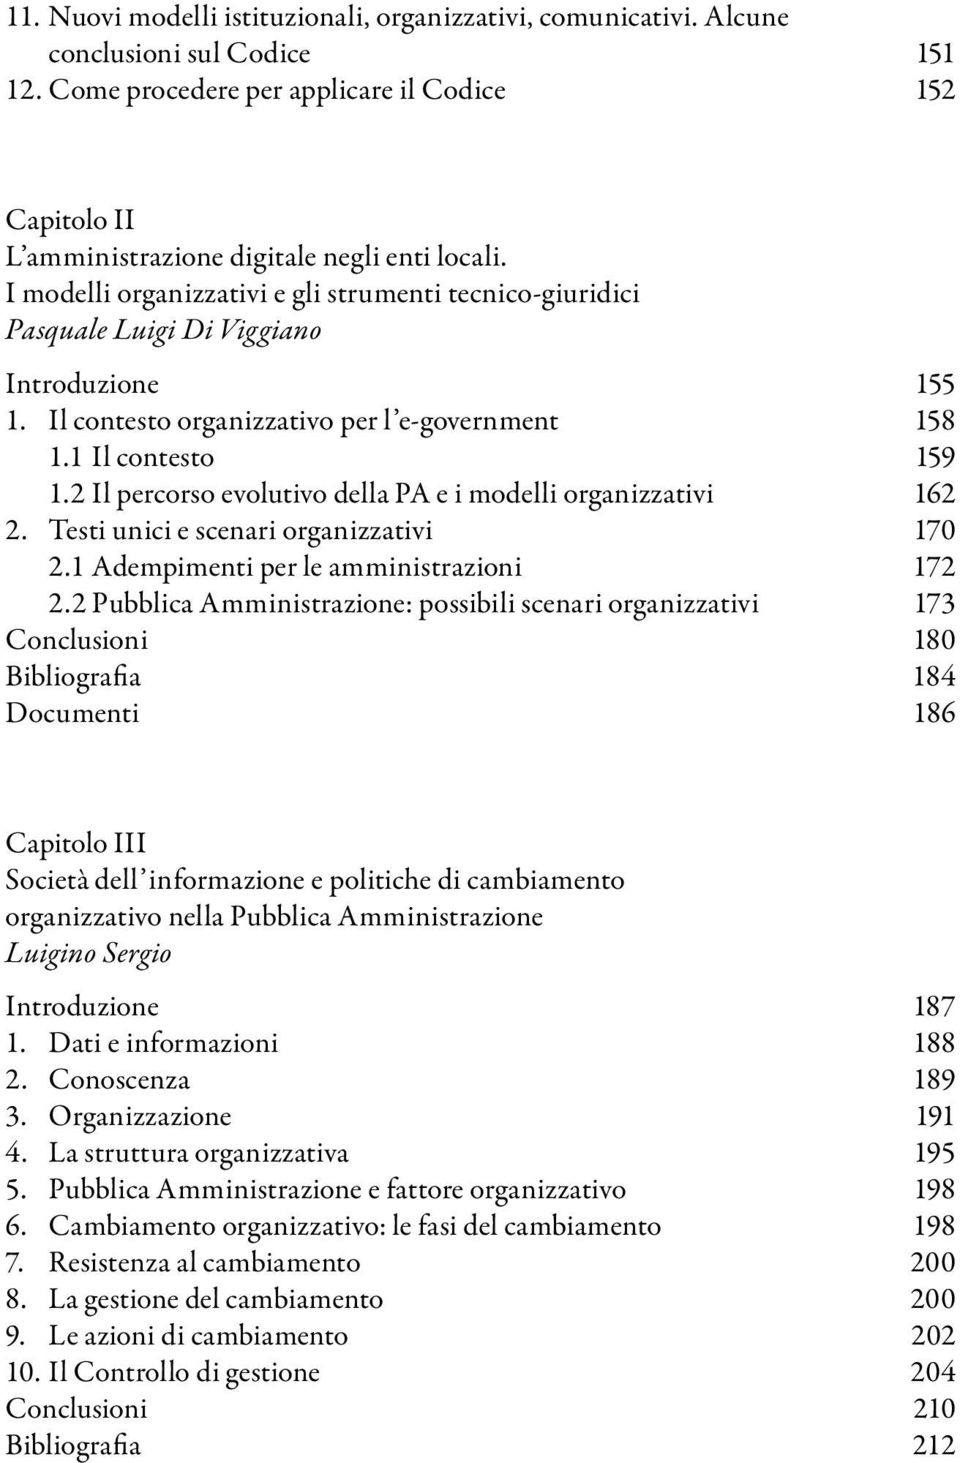 2 Il percorso evolutivo della PA e i modelli organizzativi 162 2. Testi unici e scenari organizzativi 170 2.1 Adempimenti per le amministrazioni 172 2.